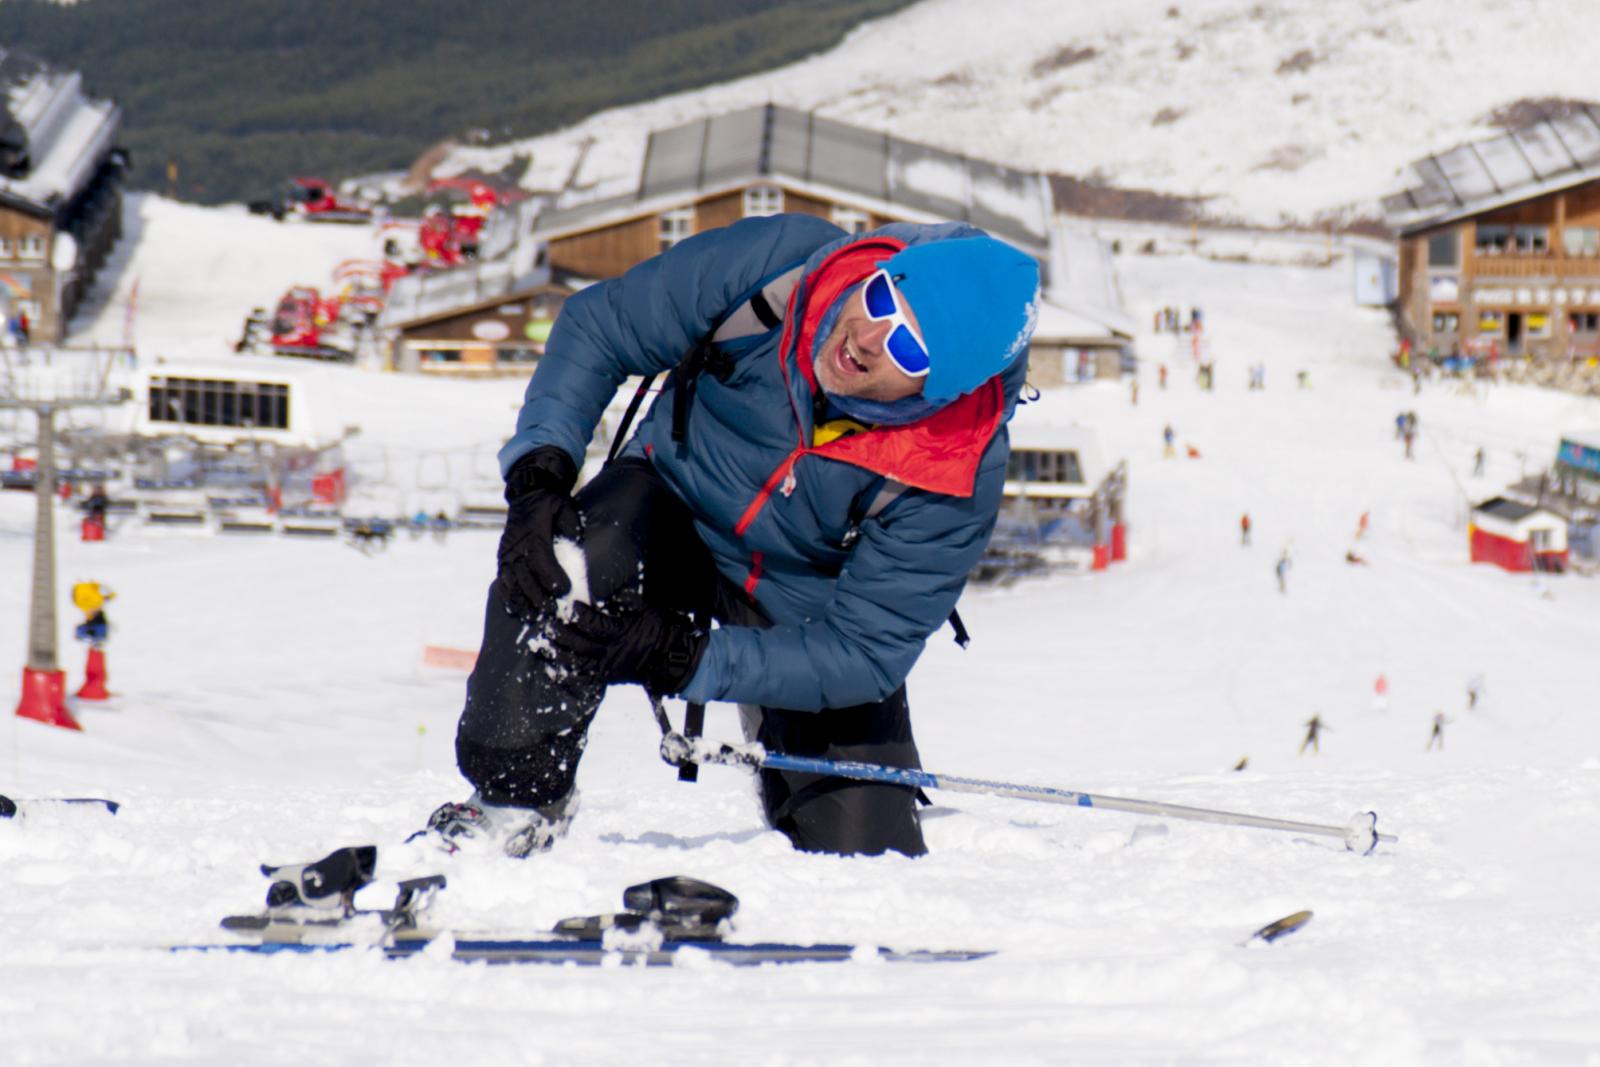 Wat te doen tegen spierpijn van het snowboarden/skiën?